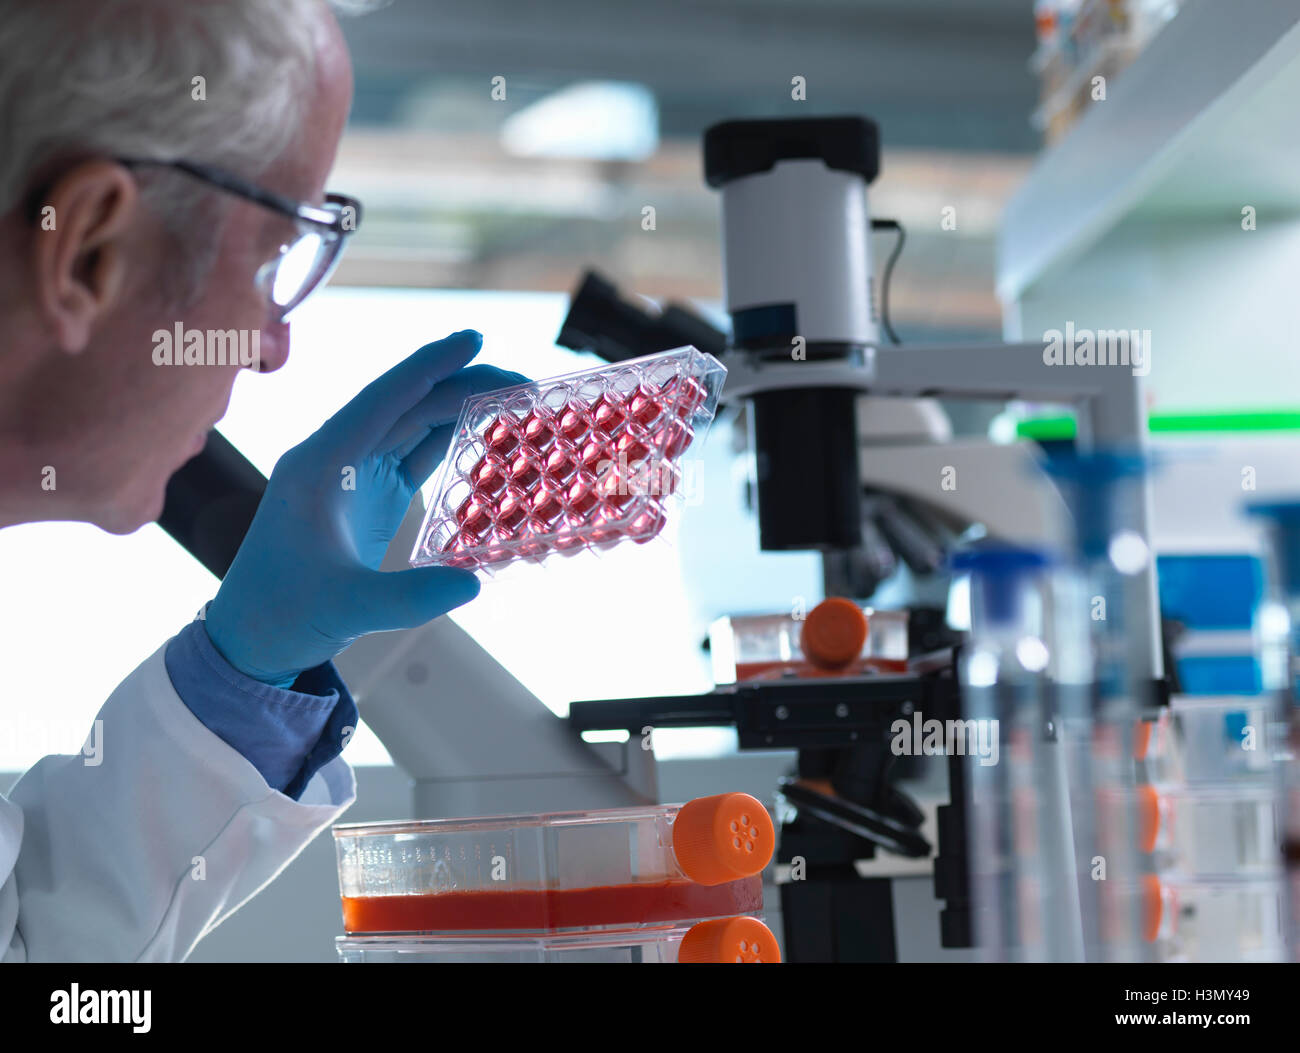 Wissenschaftler eine multiwell Halteplatte mit Wachstumsmedium allgemein verwendet in der biologischen Forschung zu pflegen und wachsen Zellen Stockfoto